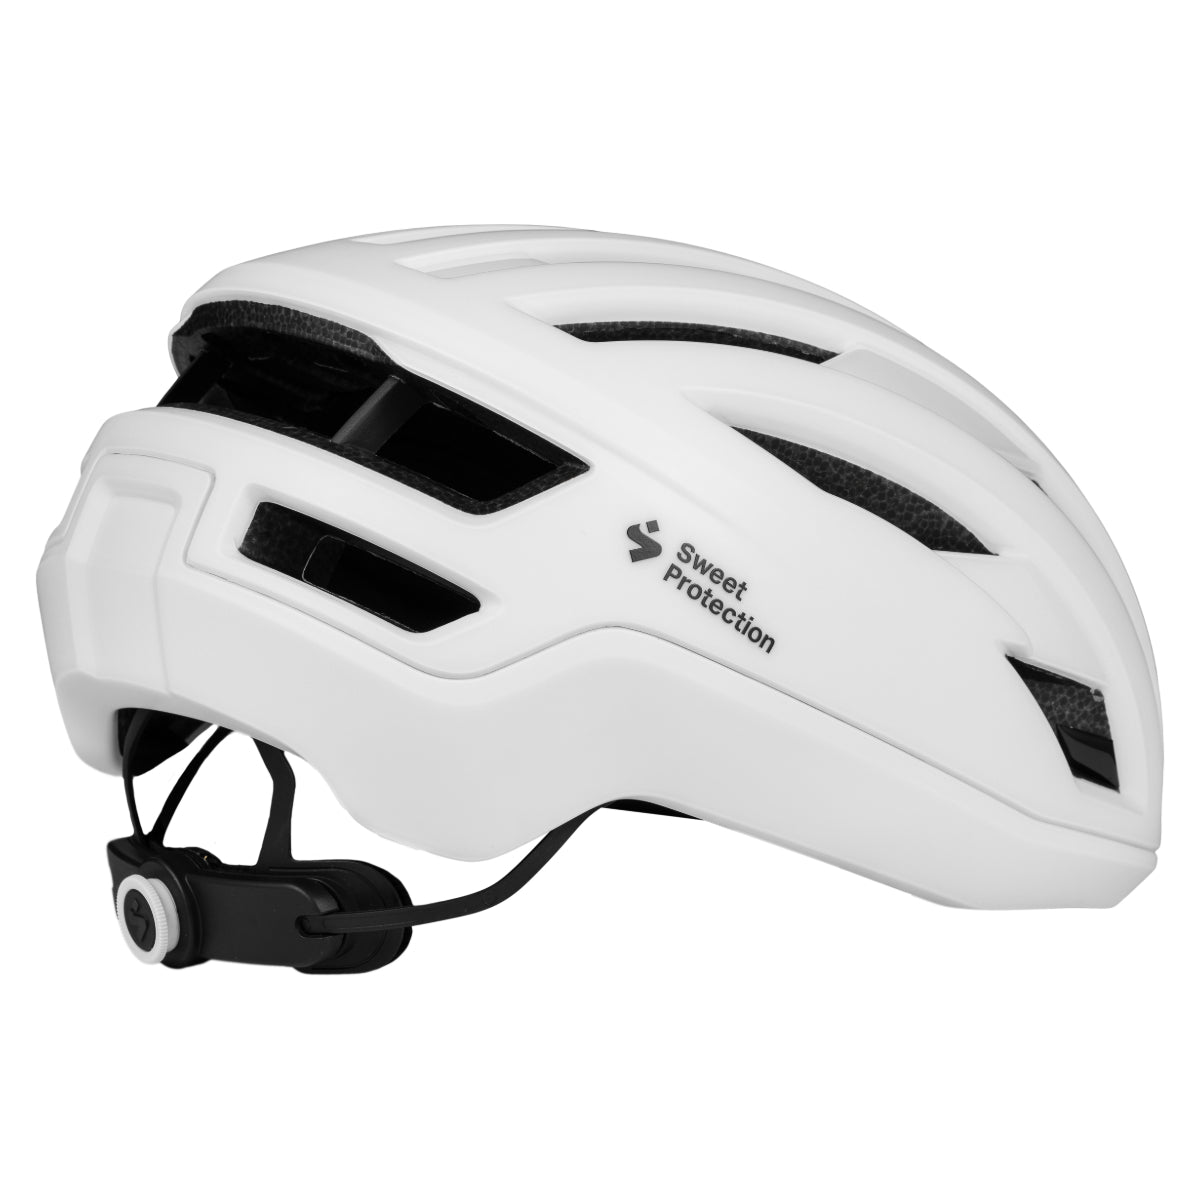 Sweet Protection - Fluxer Mips Helmet - Satin White